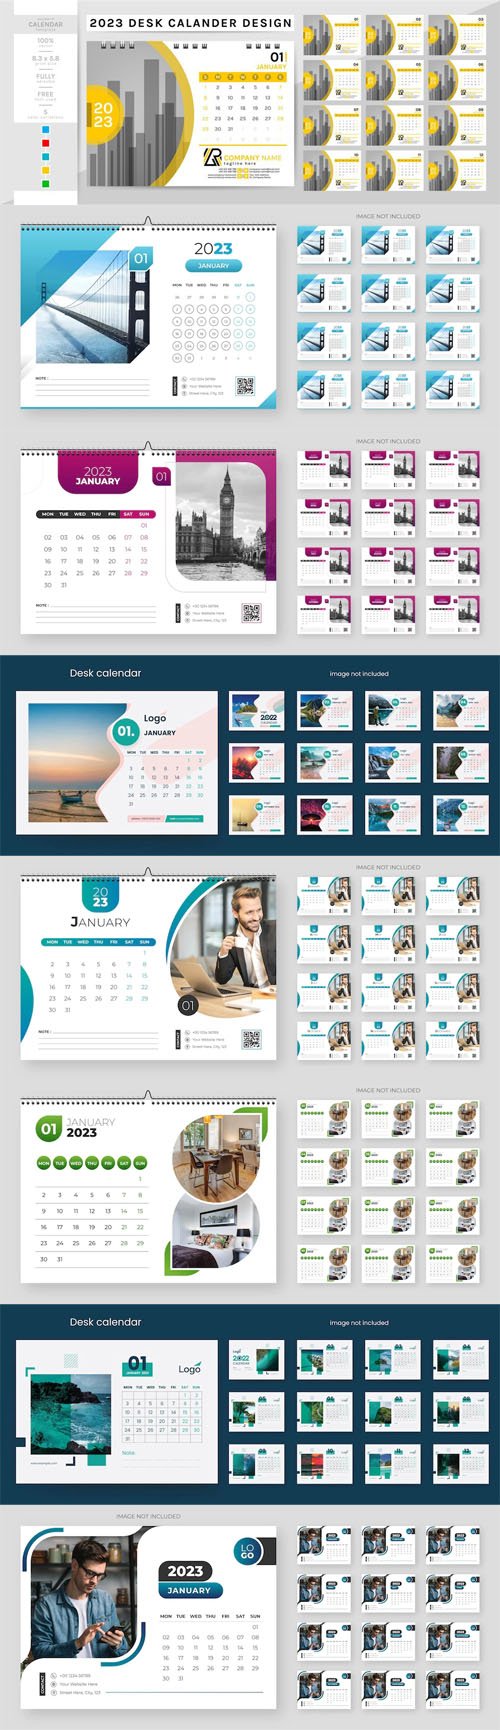 8 Creative Desk Calendars for 2023 Vector Templates